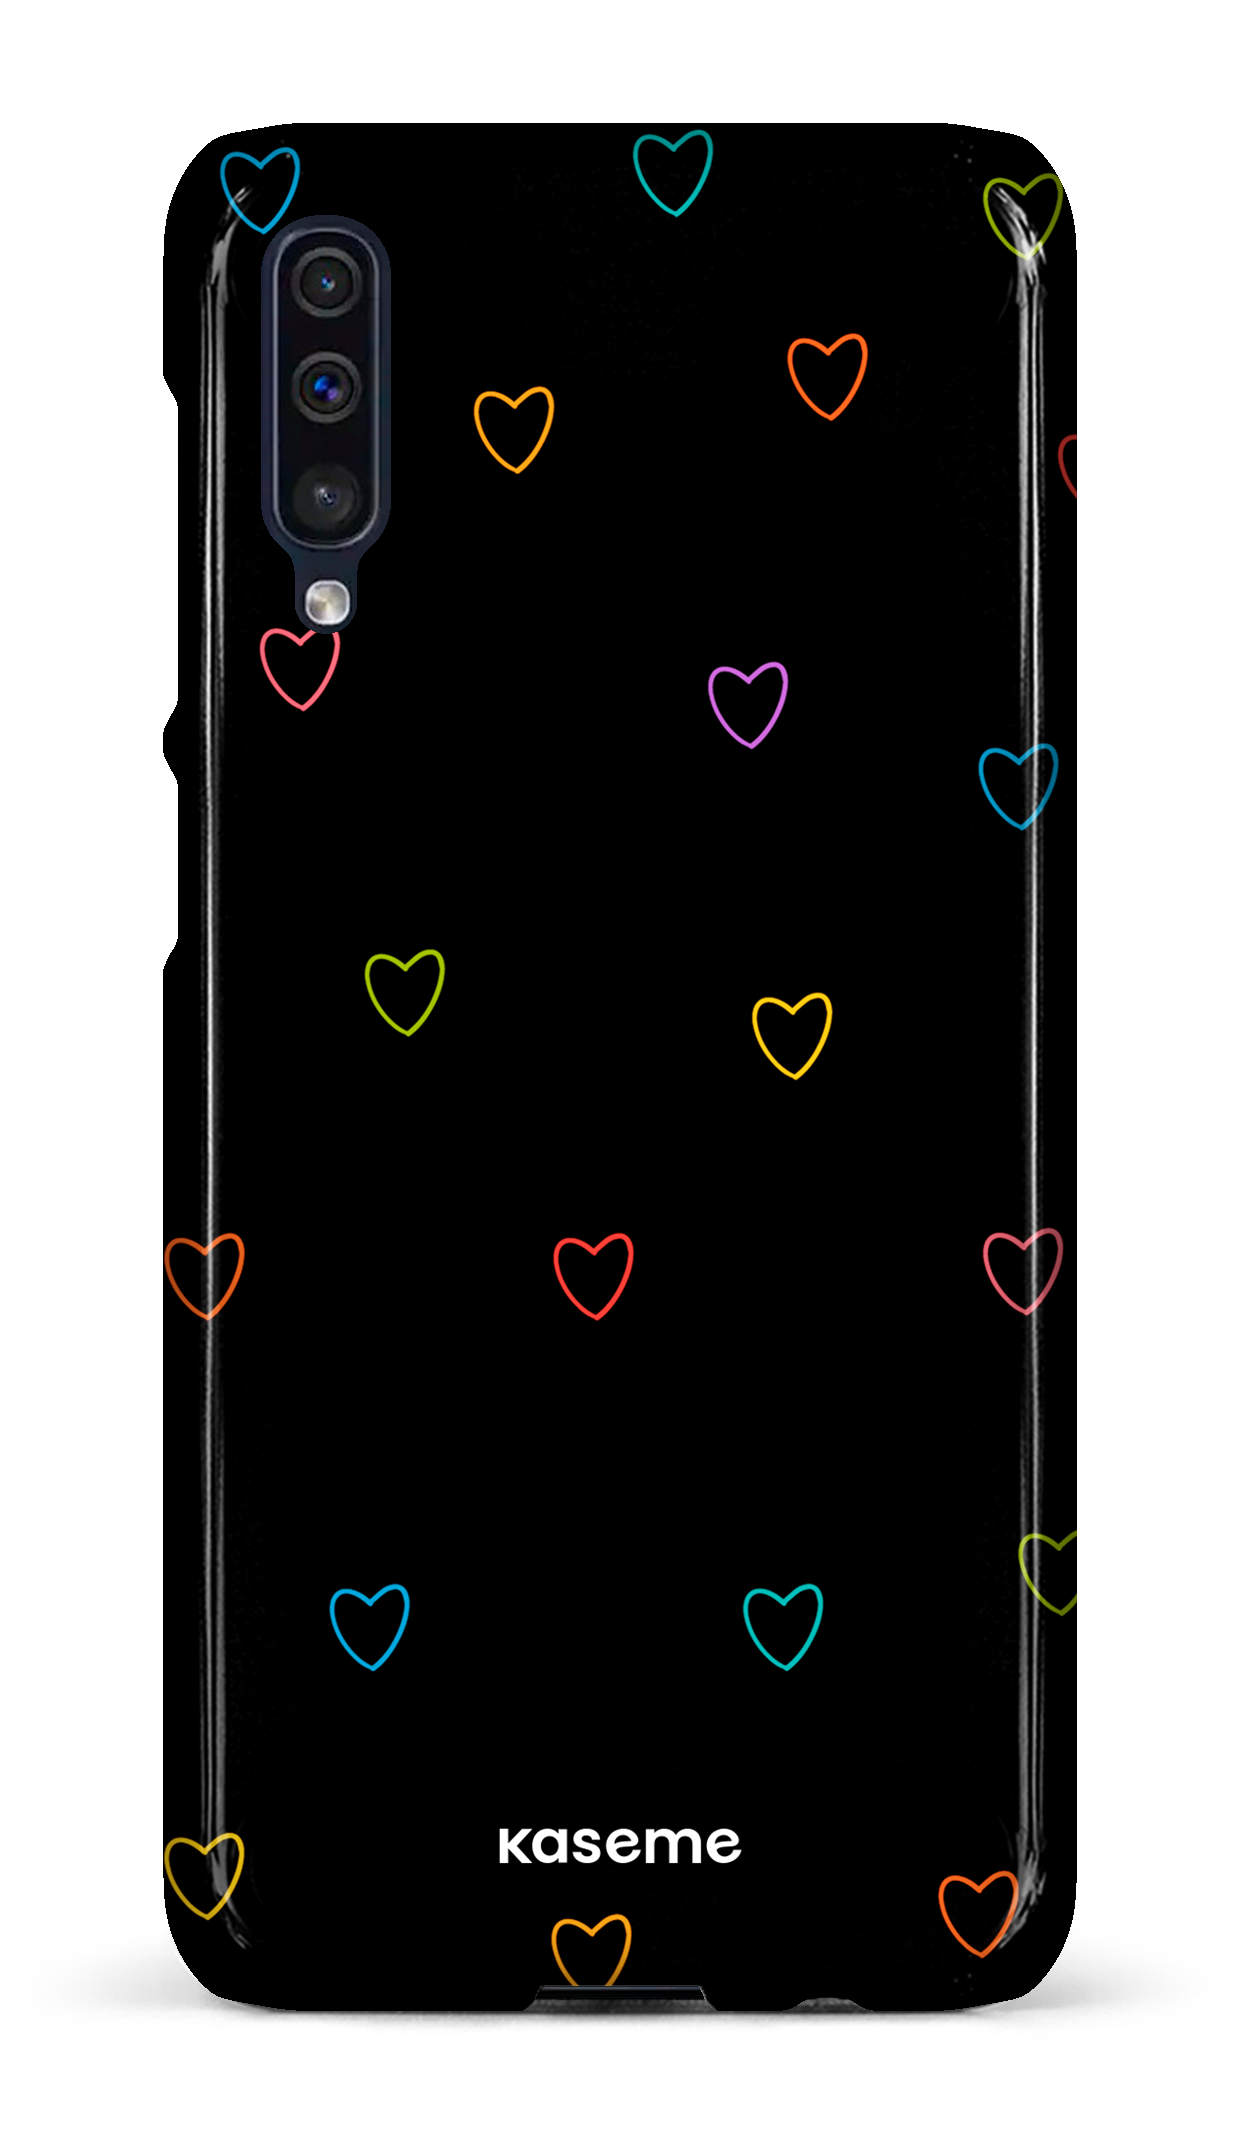 Love Wins - Galaxy A50